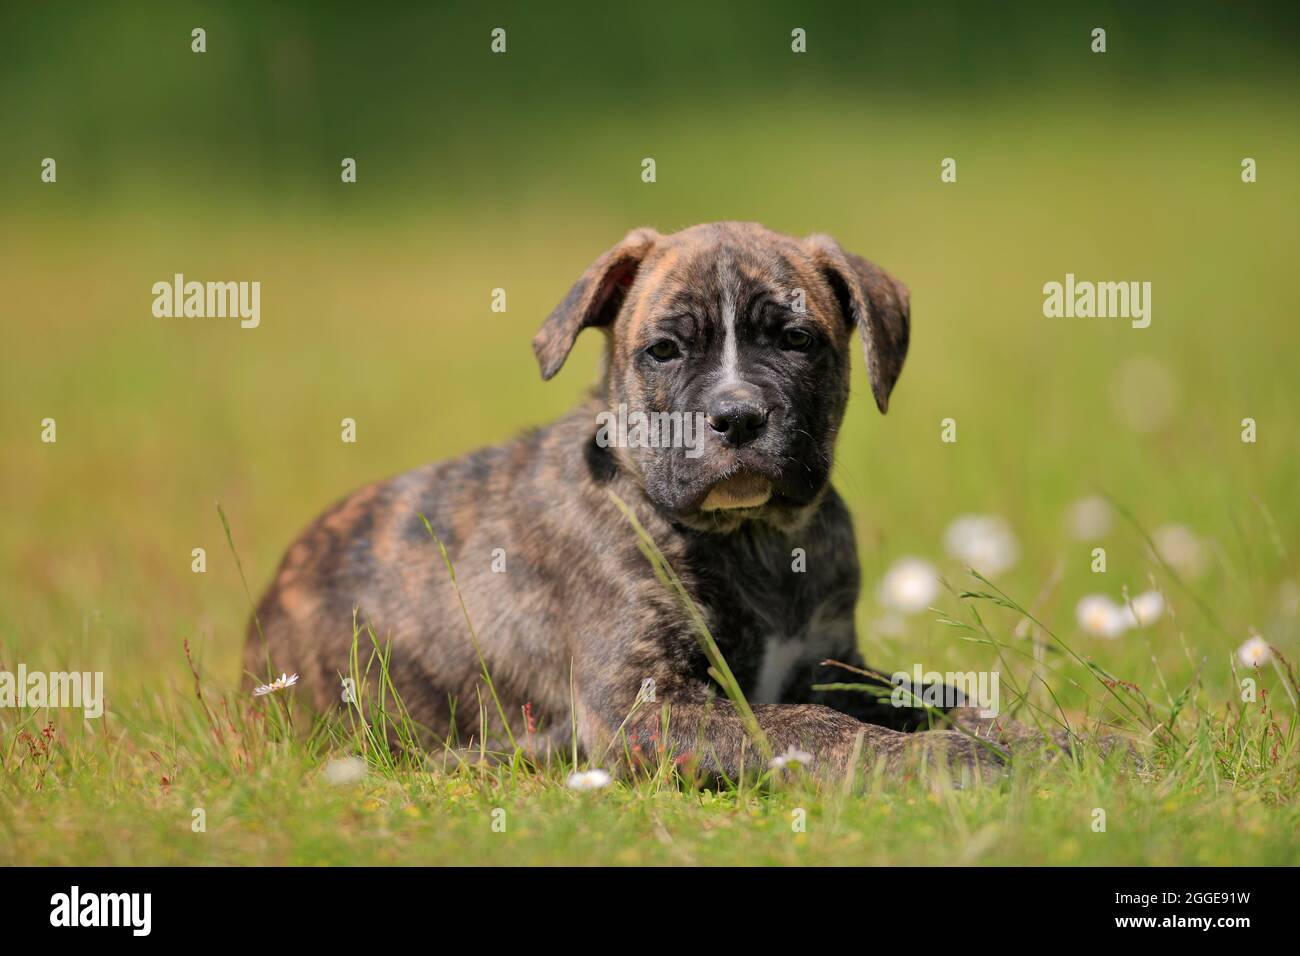 Cane Corso Boxer Mix Haushund (Canis lupus familiaris), im Gras liegender  Welpe, Rheinland-Pfalz, Deutschland Stockfotografie - Alamy